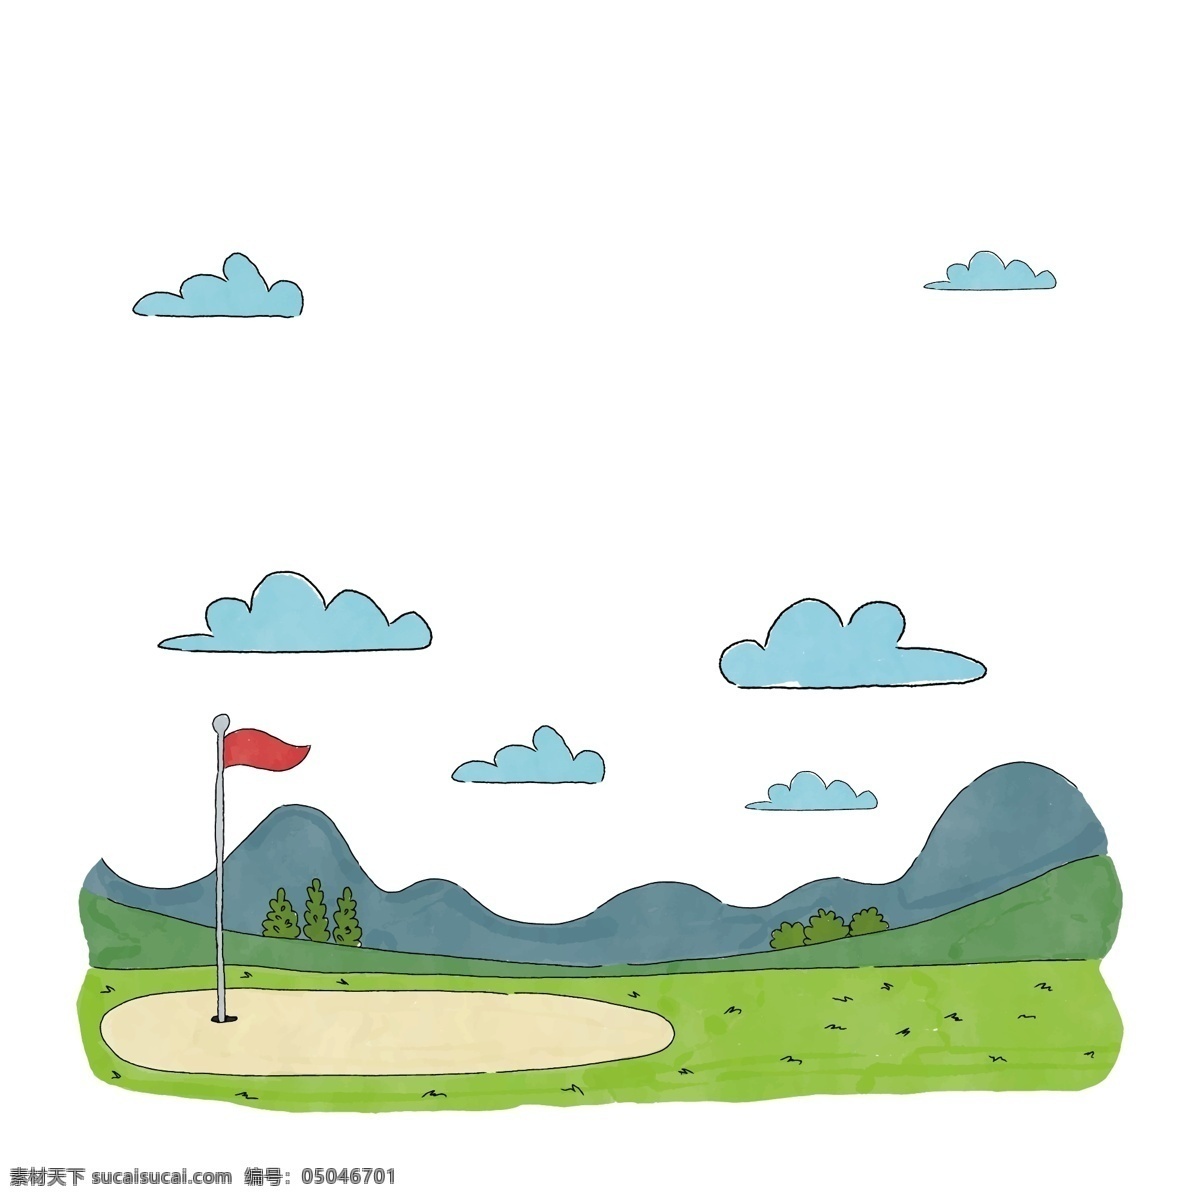 手绘 高尔夫 空地 矢量 高尔夫球场 球场 红旗 红烧旗帜 旗帜 手绘球场 手绘的球场 青青草地 草地 手绘草地